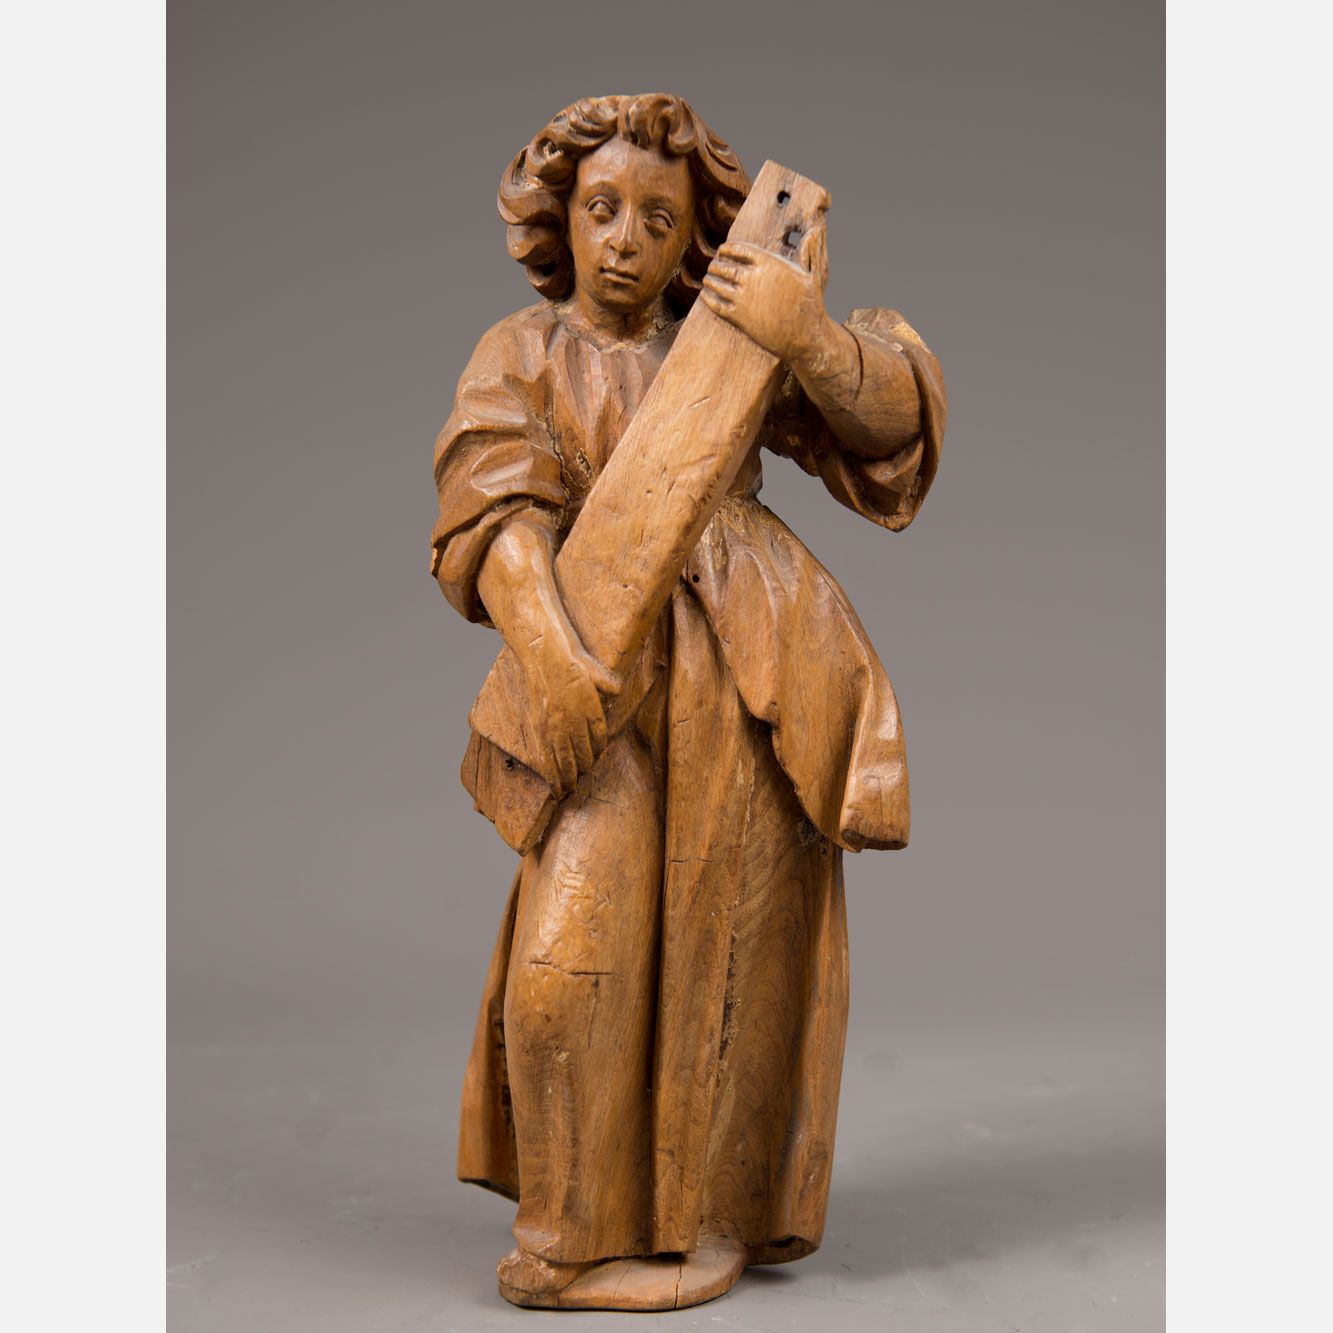 Standing angel 站立的天使，果木雕刻，有折叠的衣服和卷曲的头发，部分缺失，南德1700年左右。高31厘米